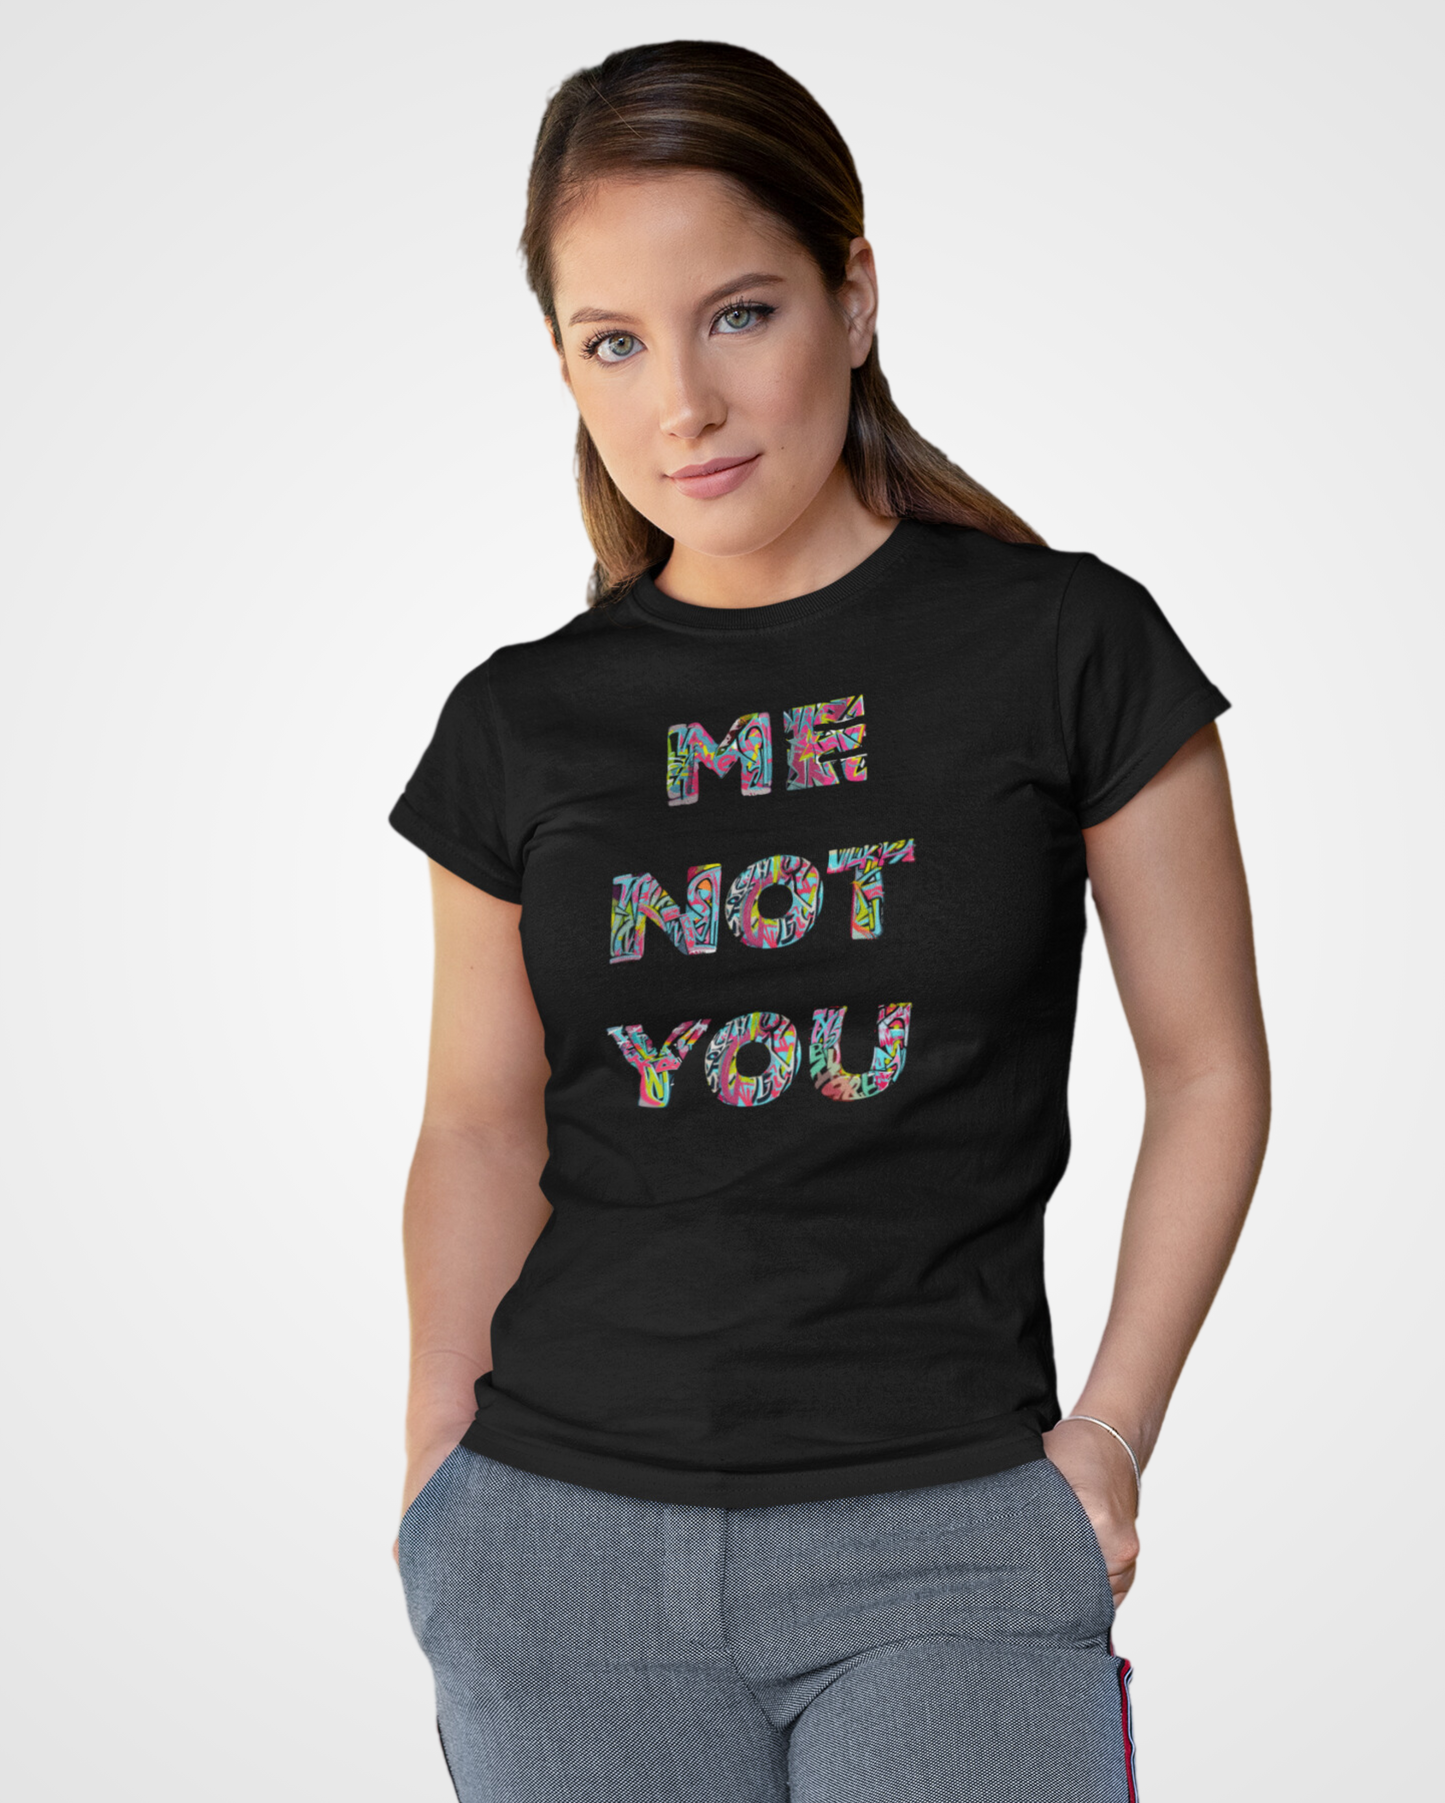 Women's Me not you Typographic T-shirt - Lama Fashion